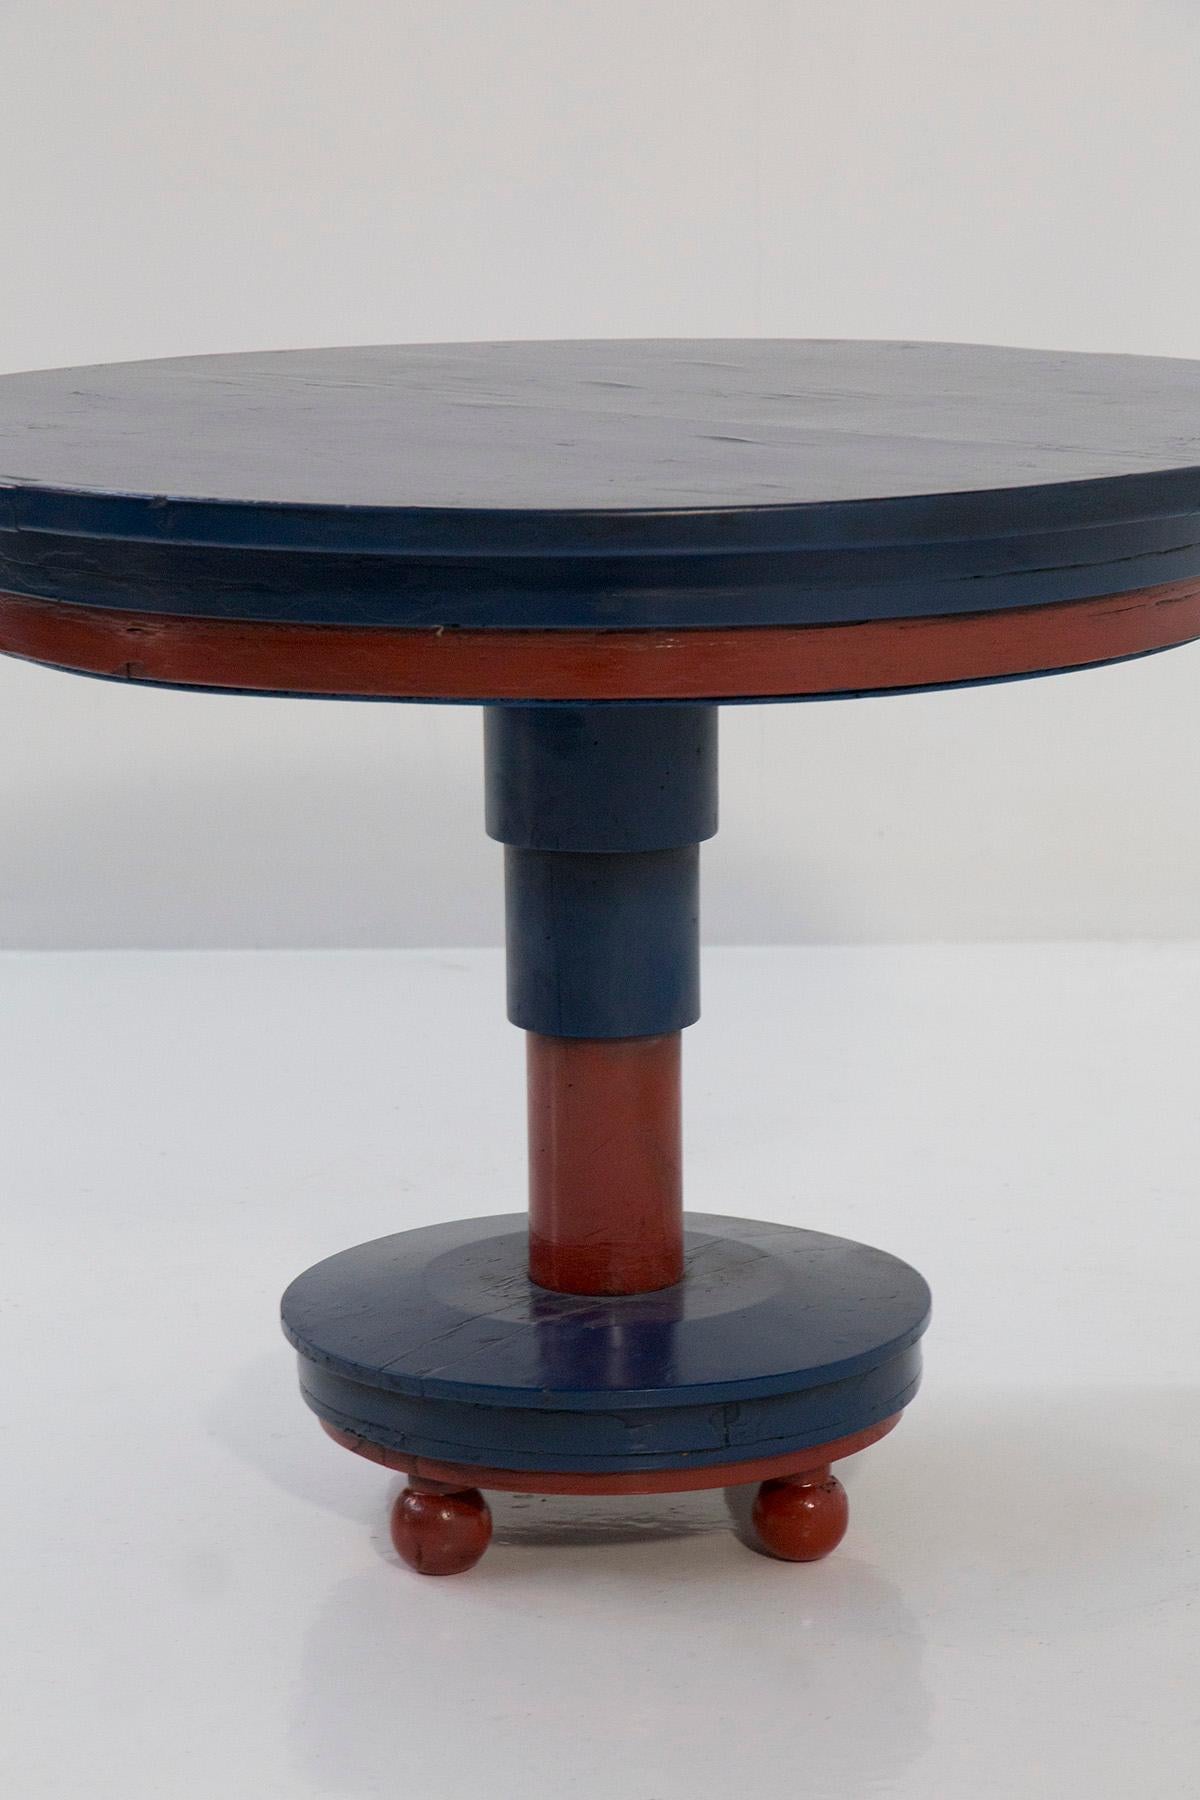 Admirez l'hypnotique table basse italienne attribuée à l'habileté créative de Luigi Colombo Fillìa, créée vers 1920-1930.

Laissez-vous séduire par cette création extraordinaire, réalisée avec passion et finesse. Fabriquée en bois peint dans des